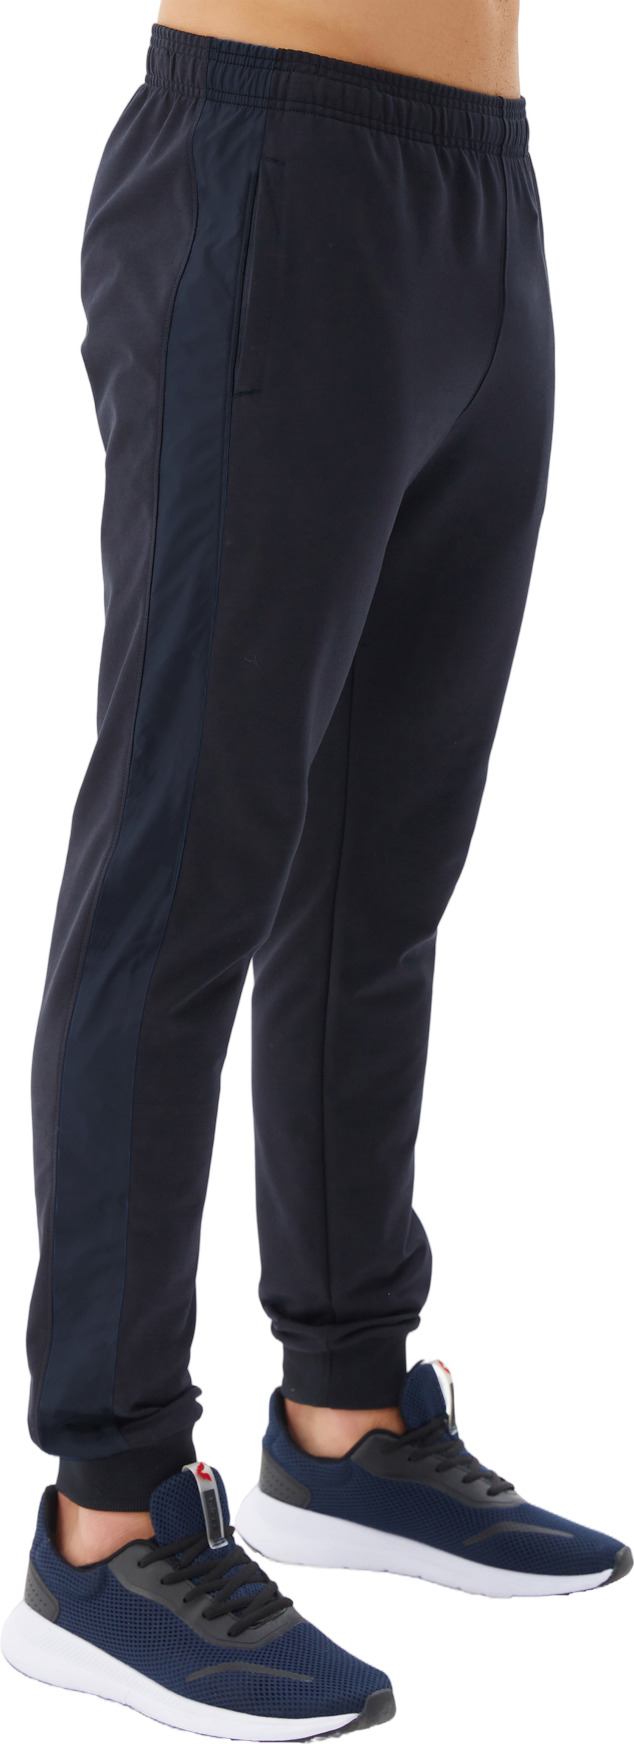 Спортивные брюки мужские Bilcee Men's Sweatpants синие XL